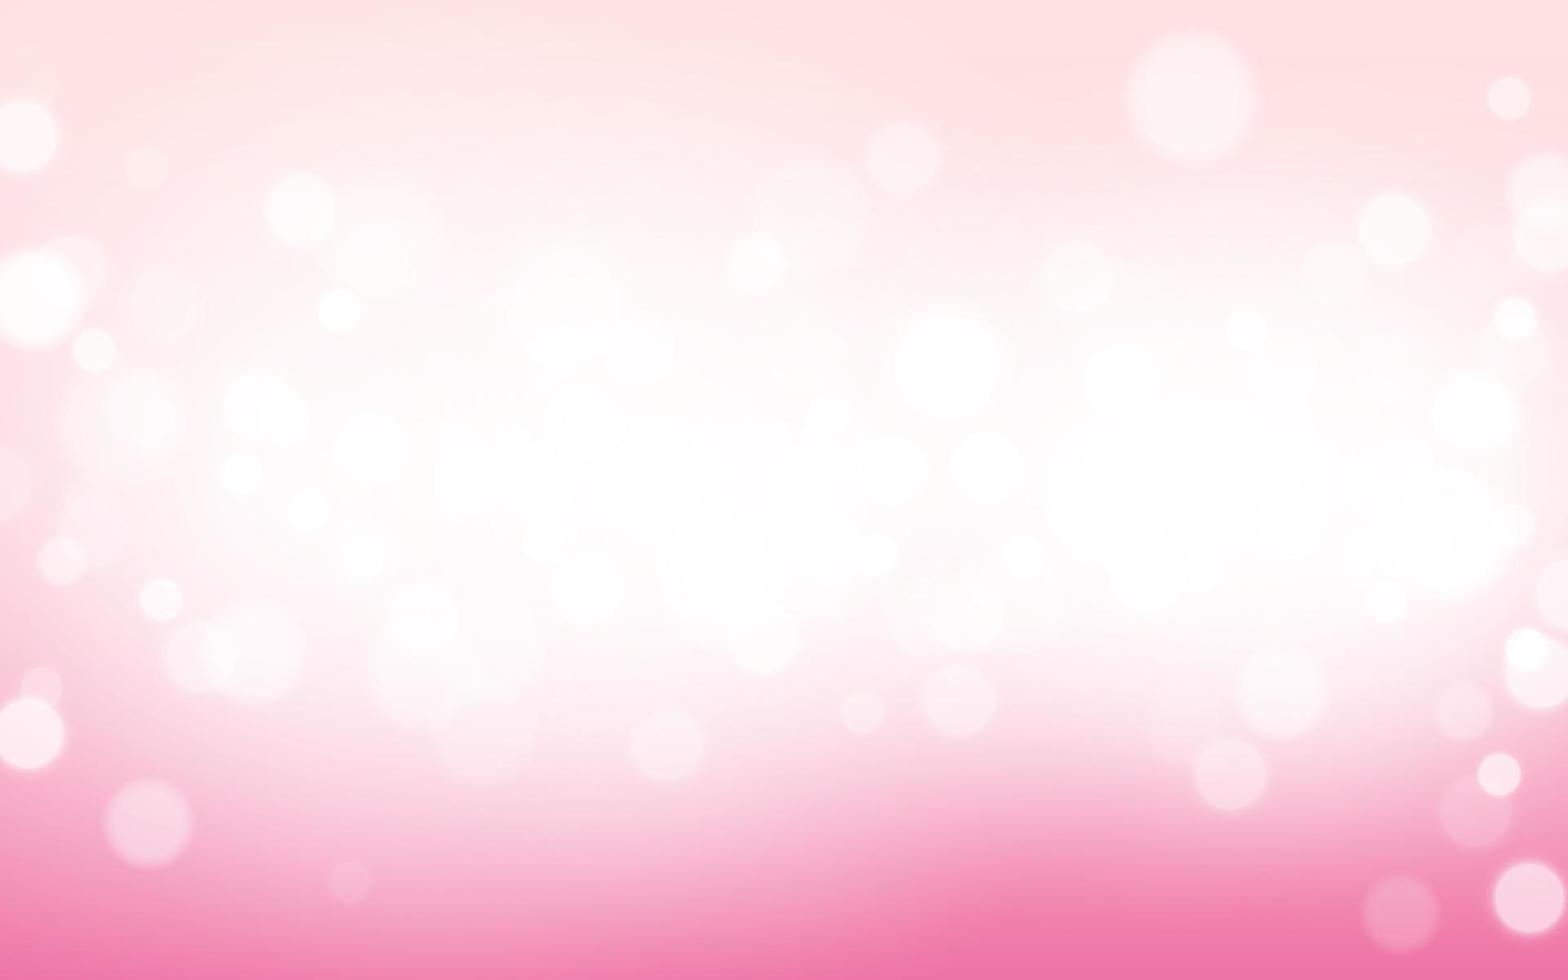 fondo abstracto de luz suave de bokeh de san valentín rosa, partículas de bokeh de ilustración vectorial eps 10, decoración de fondo vector